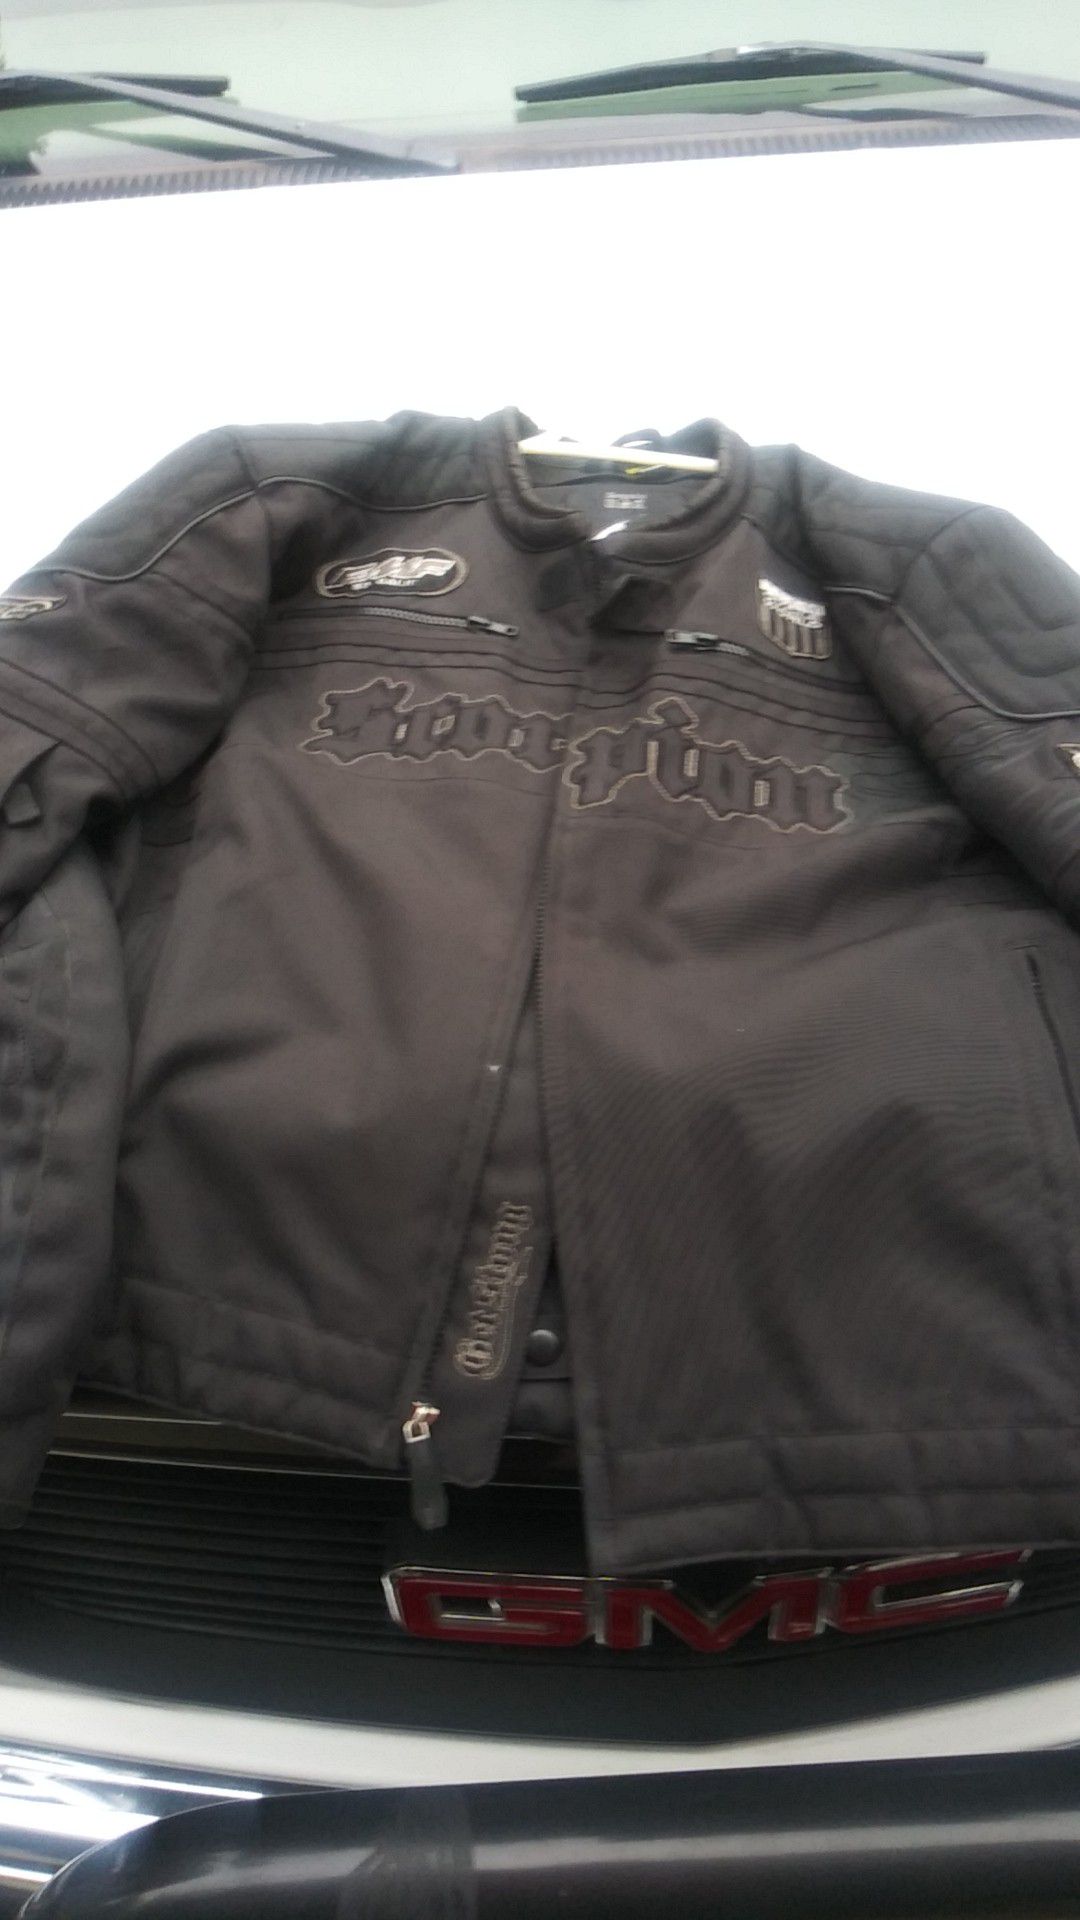 Scorpion racing motorcycle jacket. Size extra large